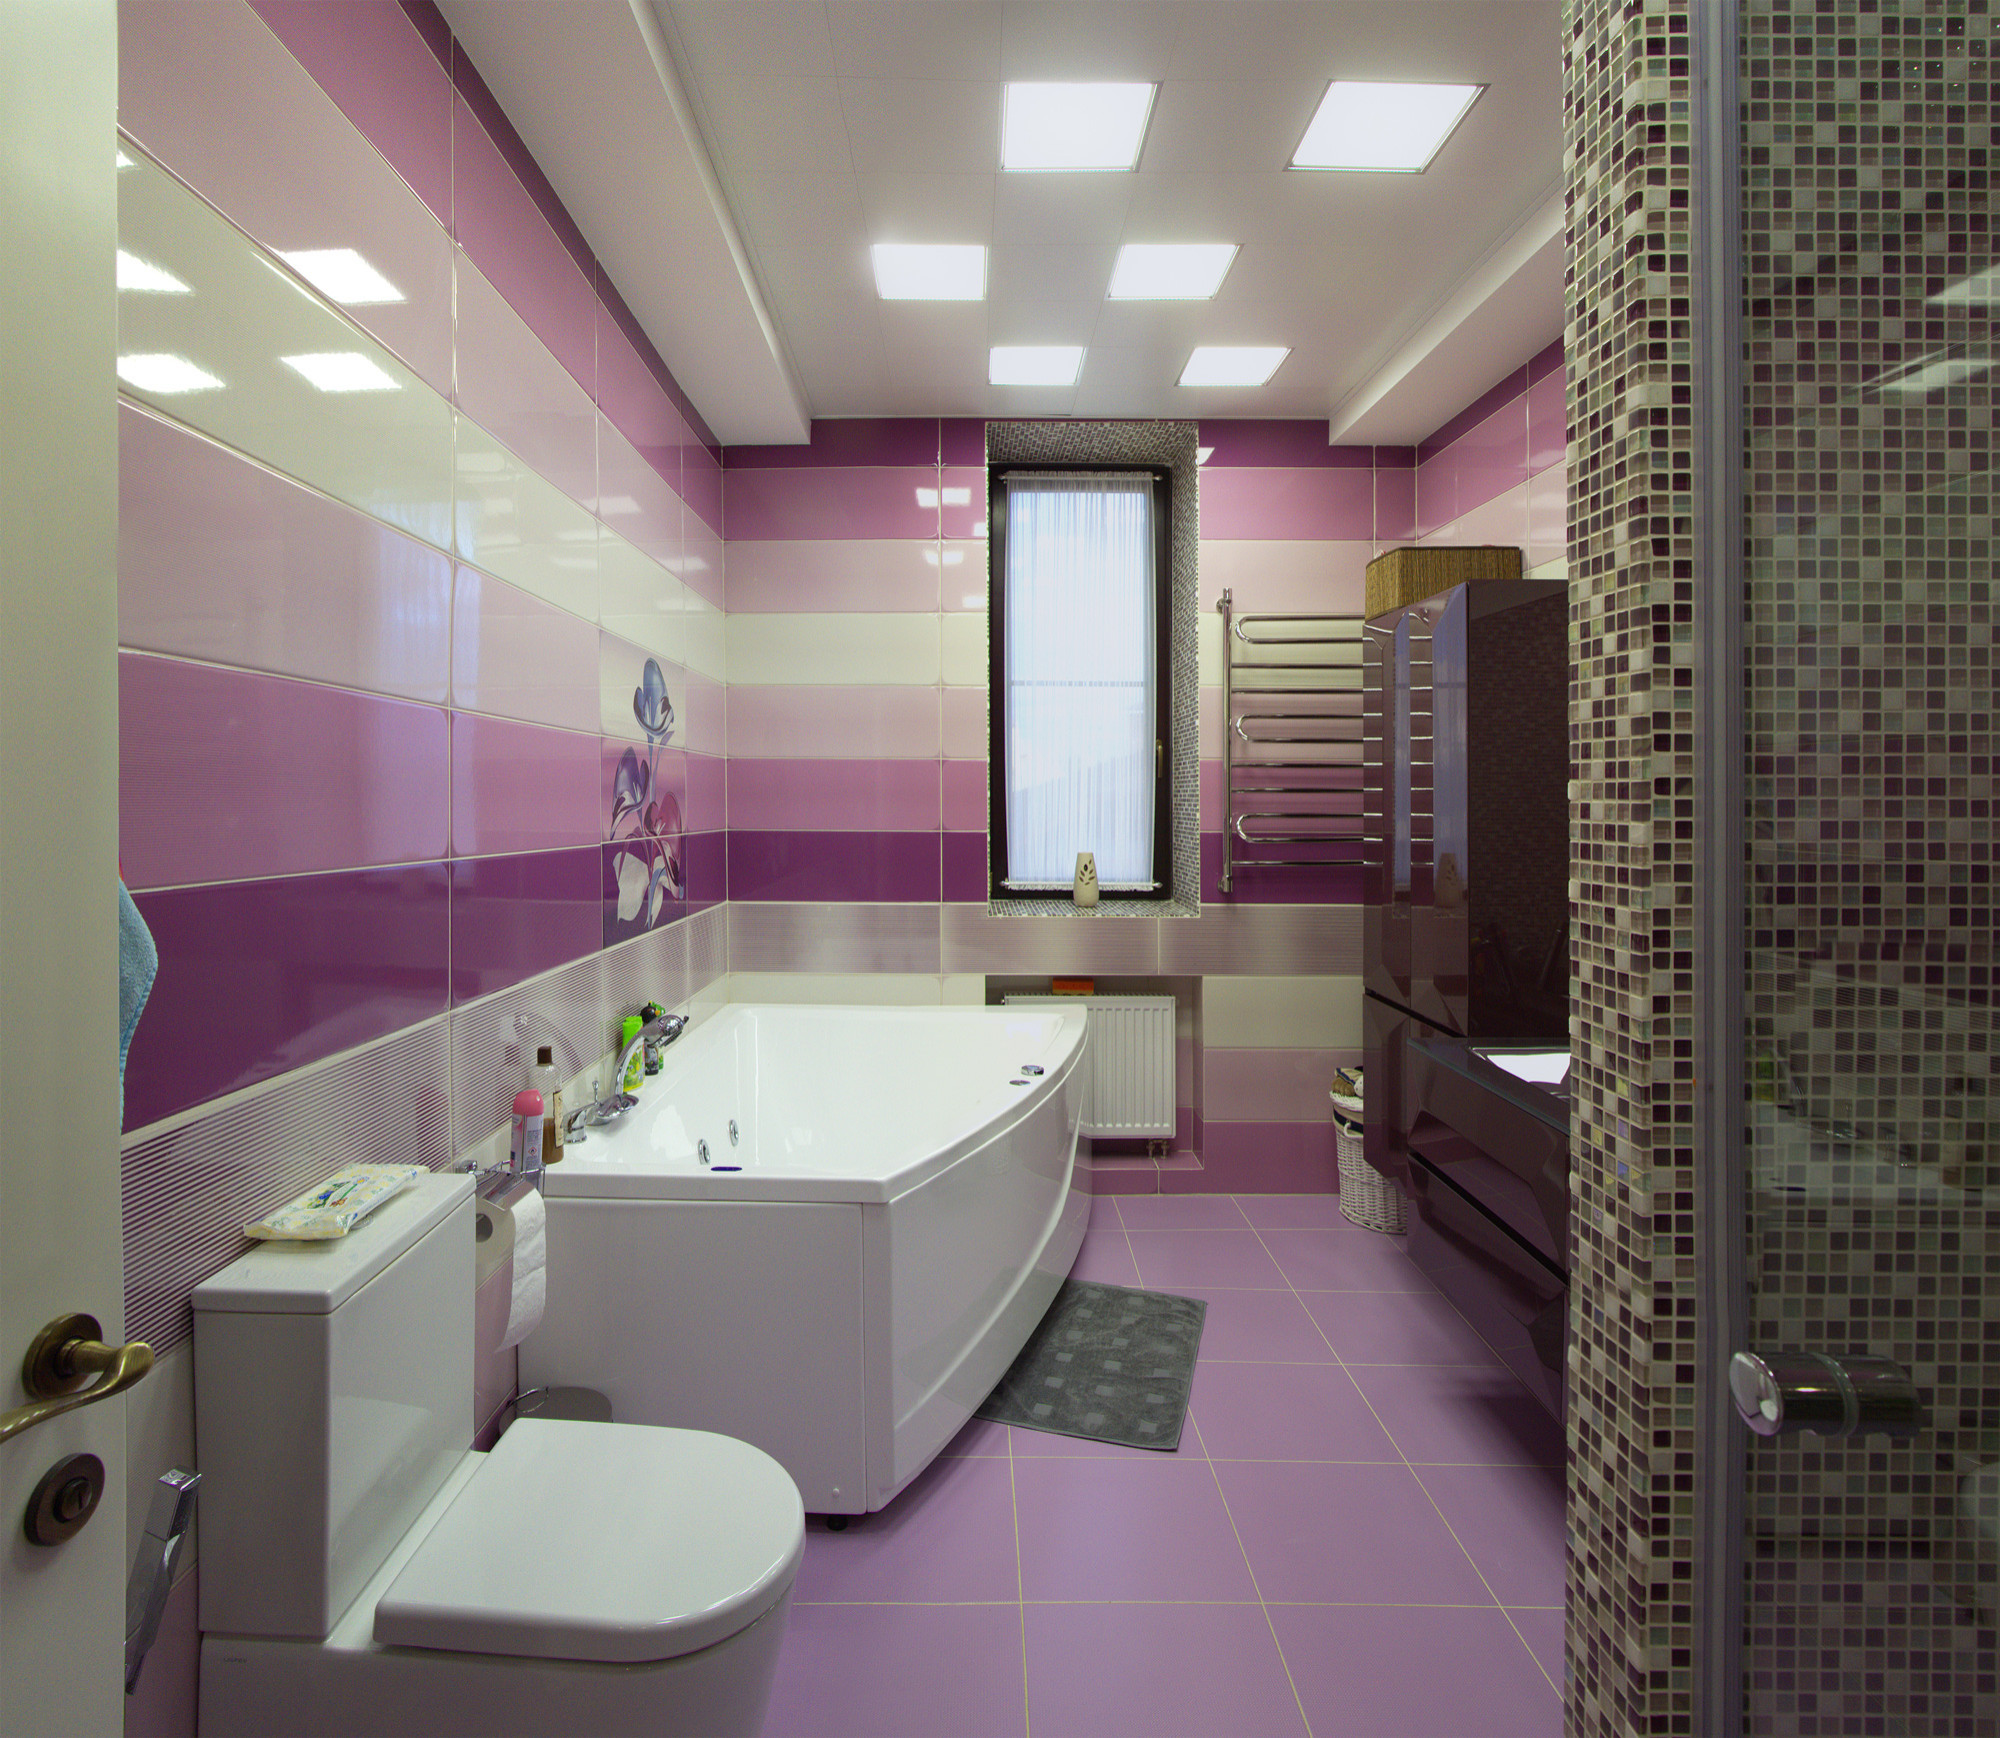 Сиреневая ванная комната — фото величественно приятного цвета в интерьере